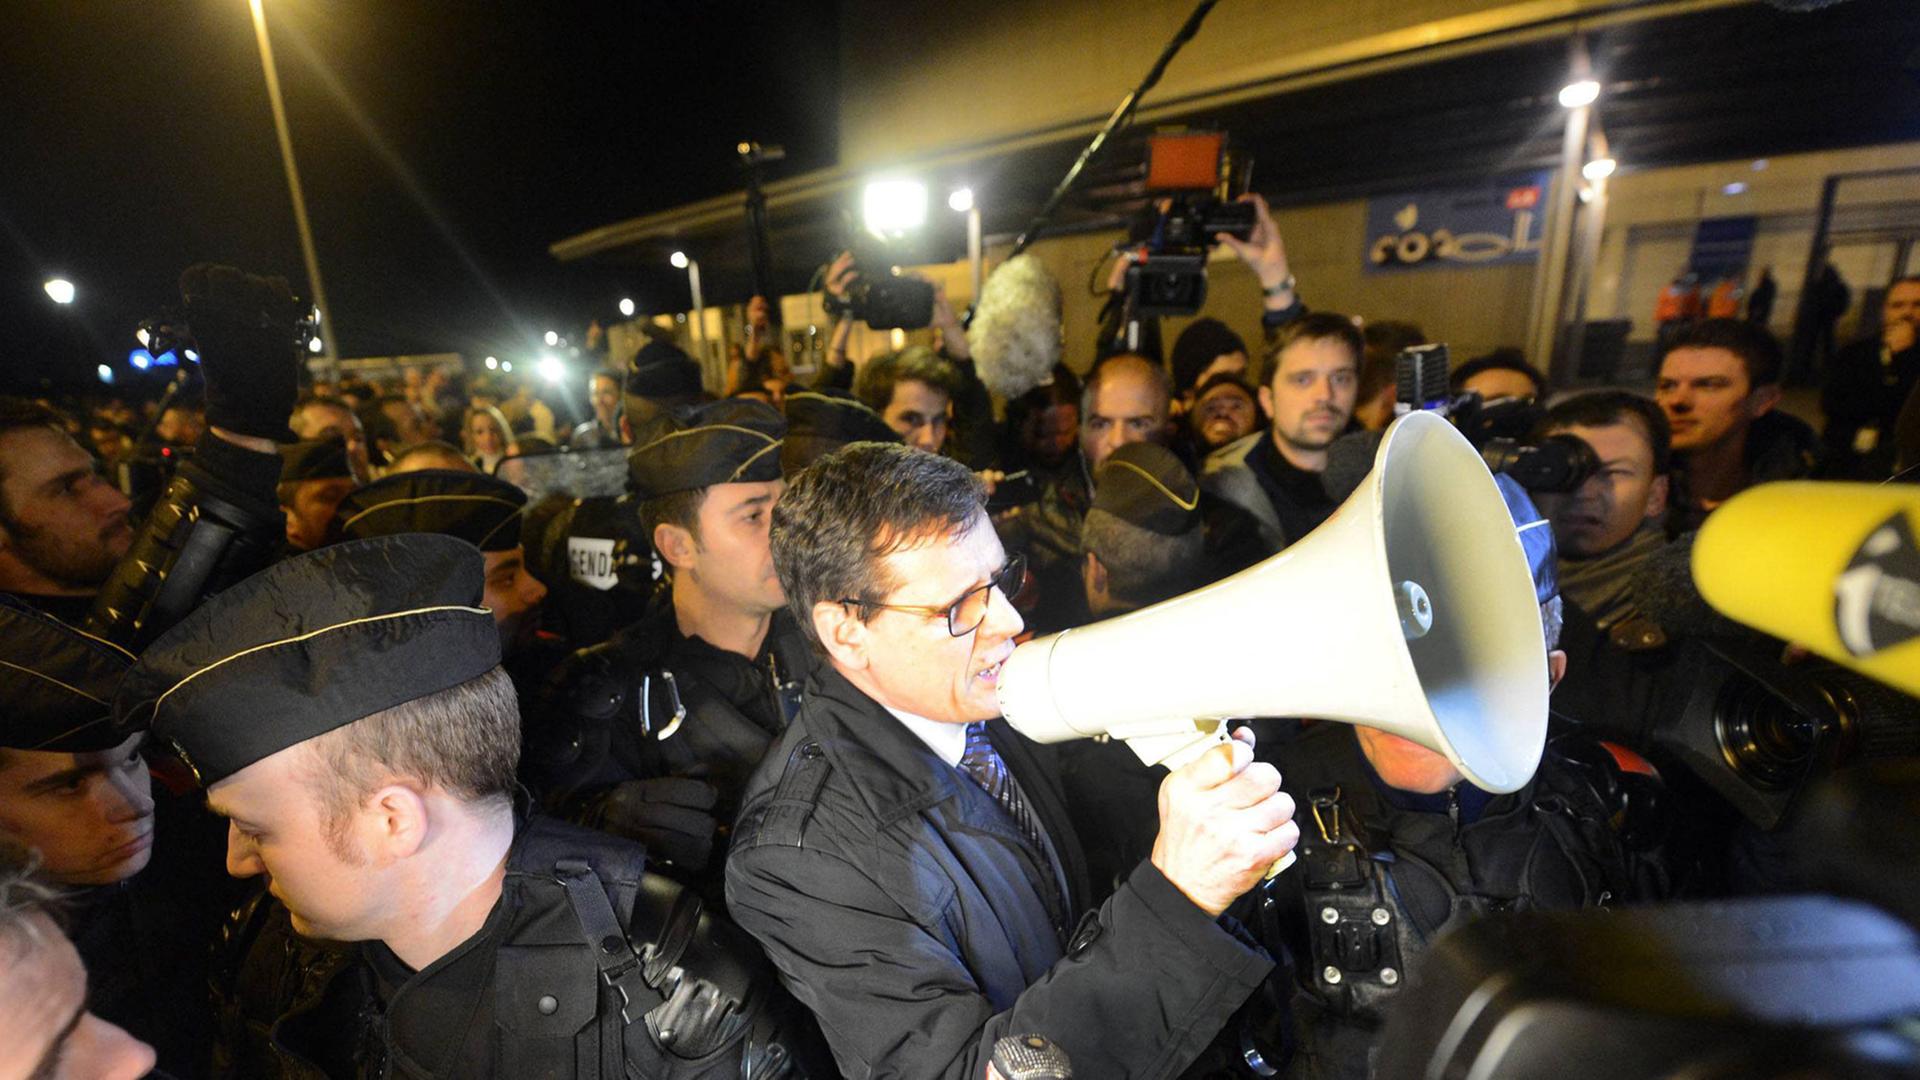 Frankreichs oberstes Verwaltungsgericht hat einen Auftritt des umstrittenen Komikers Dieudonné verboten, der wegen antisemitischer Äußerungen in der Kritik steht. Auf dem Bild sind Polizisten und Menschen vor dem Gericht in Nantes zu sehen.